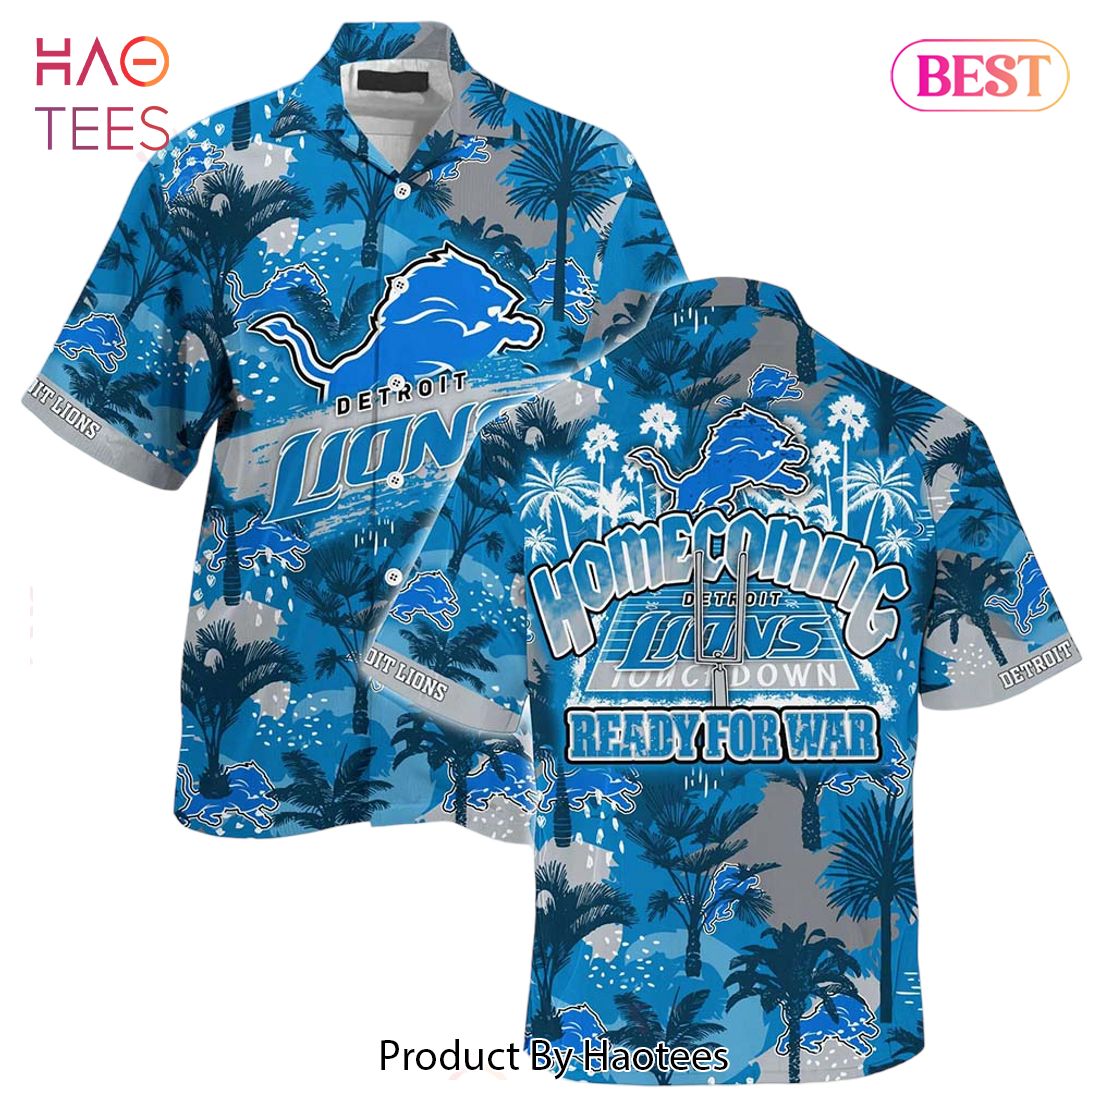 HOT TREND Detroit Lions NFL Beach Shirt For Sports Fans This Summer Hawaiian Shirt